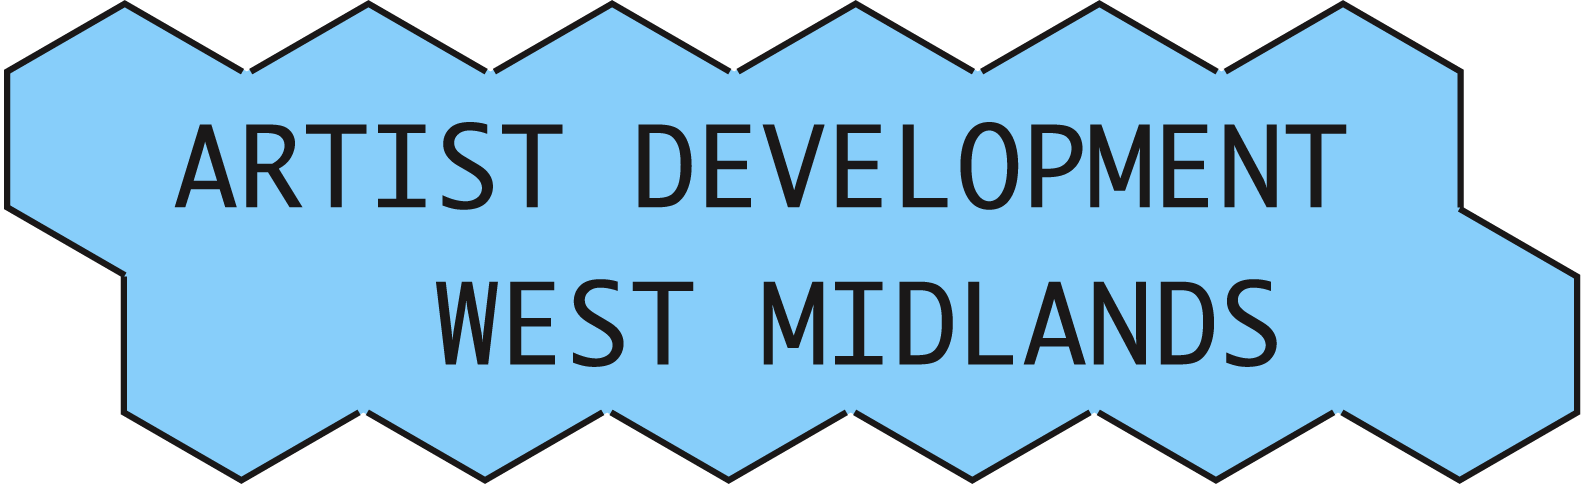 In August The Artist Development West Midlands Programme - In August The Artist Development West Midlands Programme (1582x484)